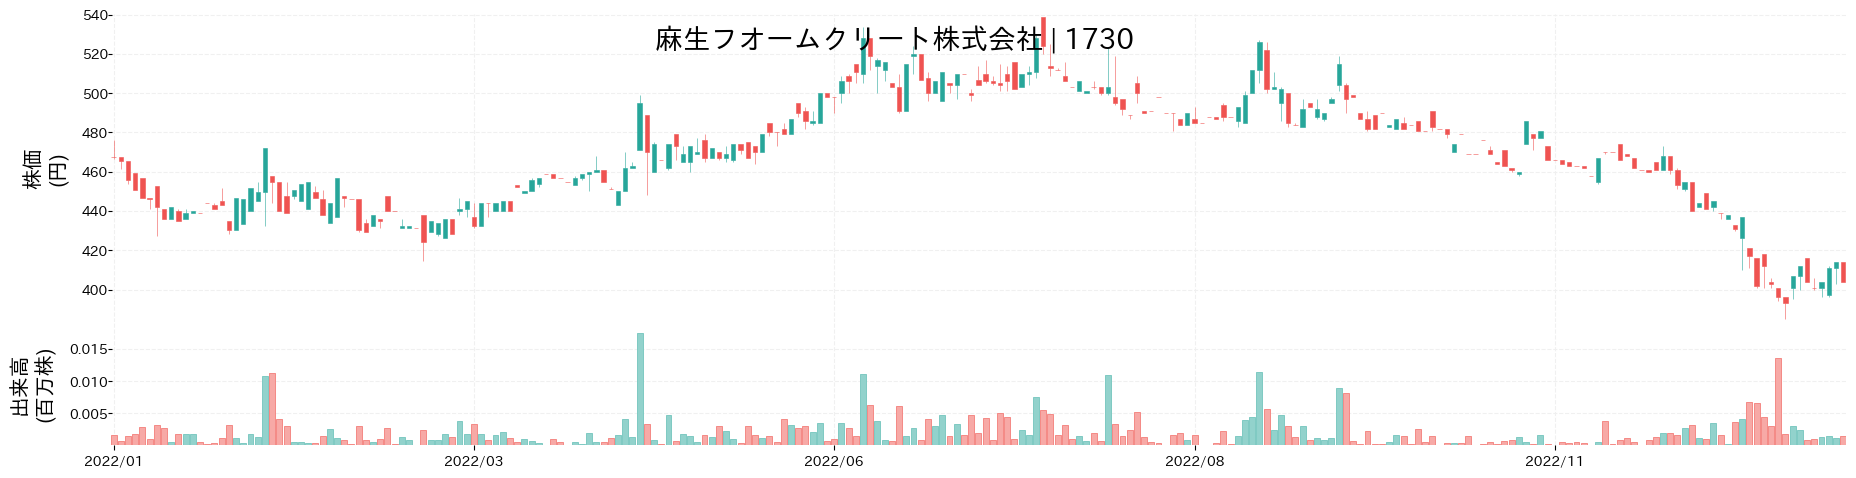 麻生フオームクリートの株価推移(2022)